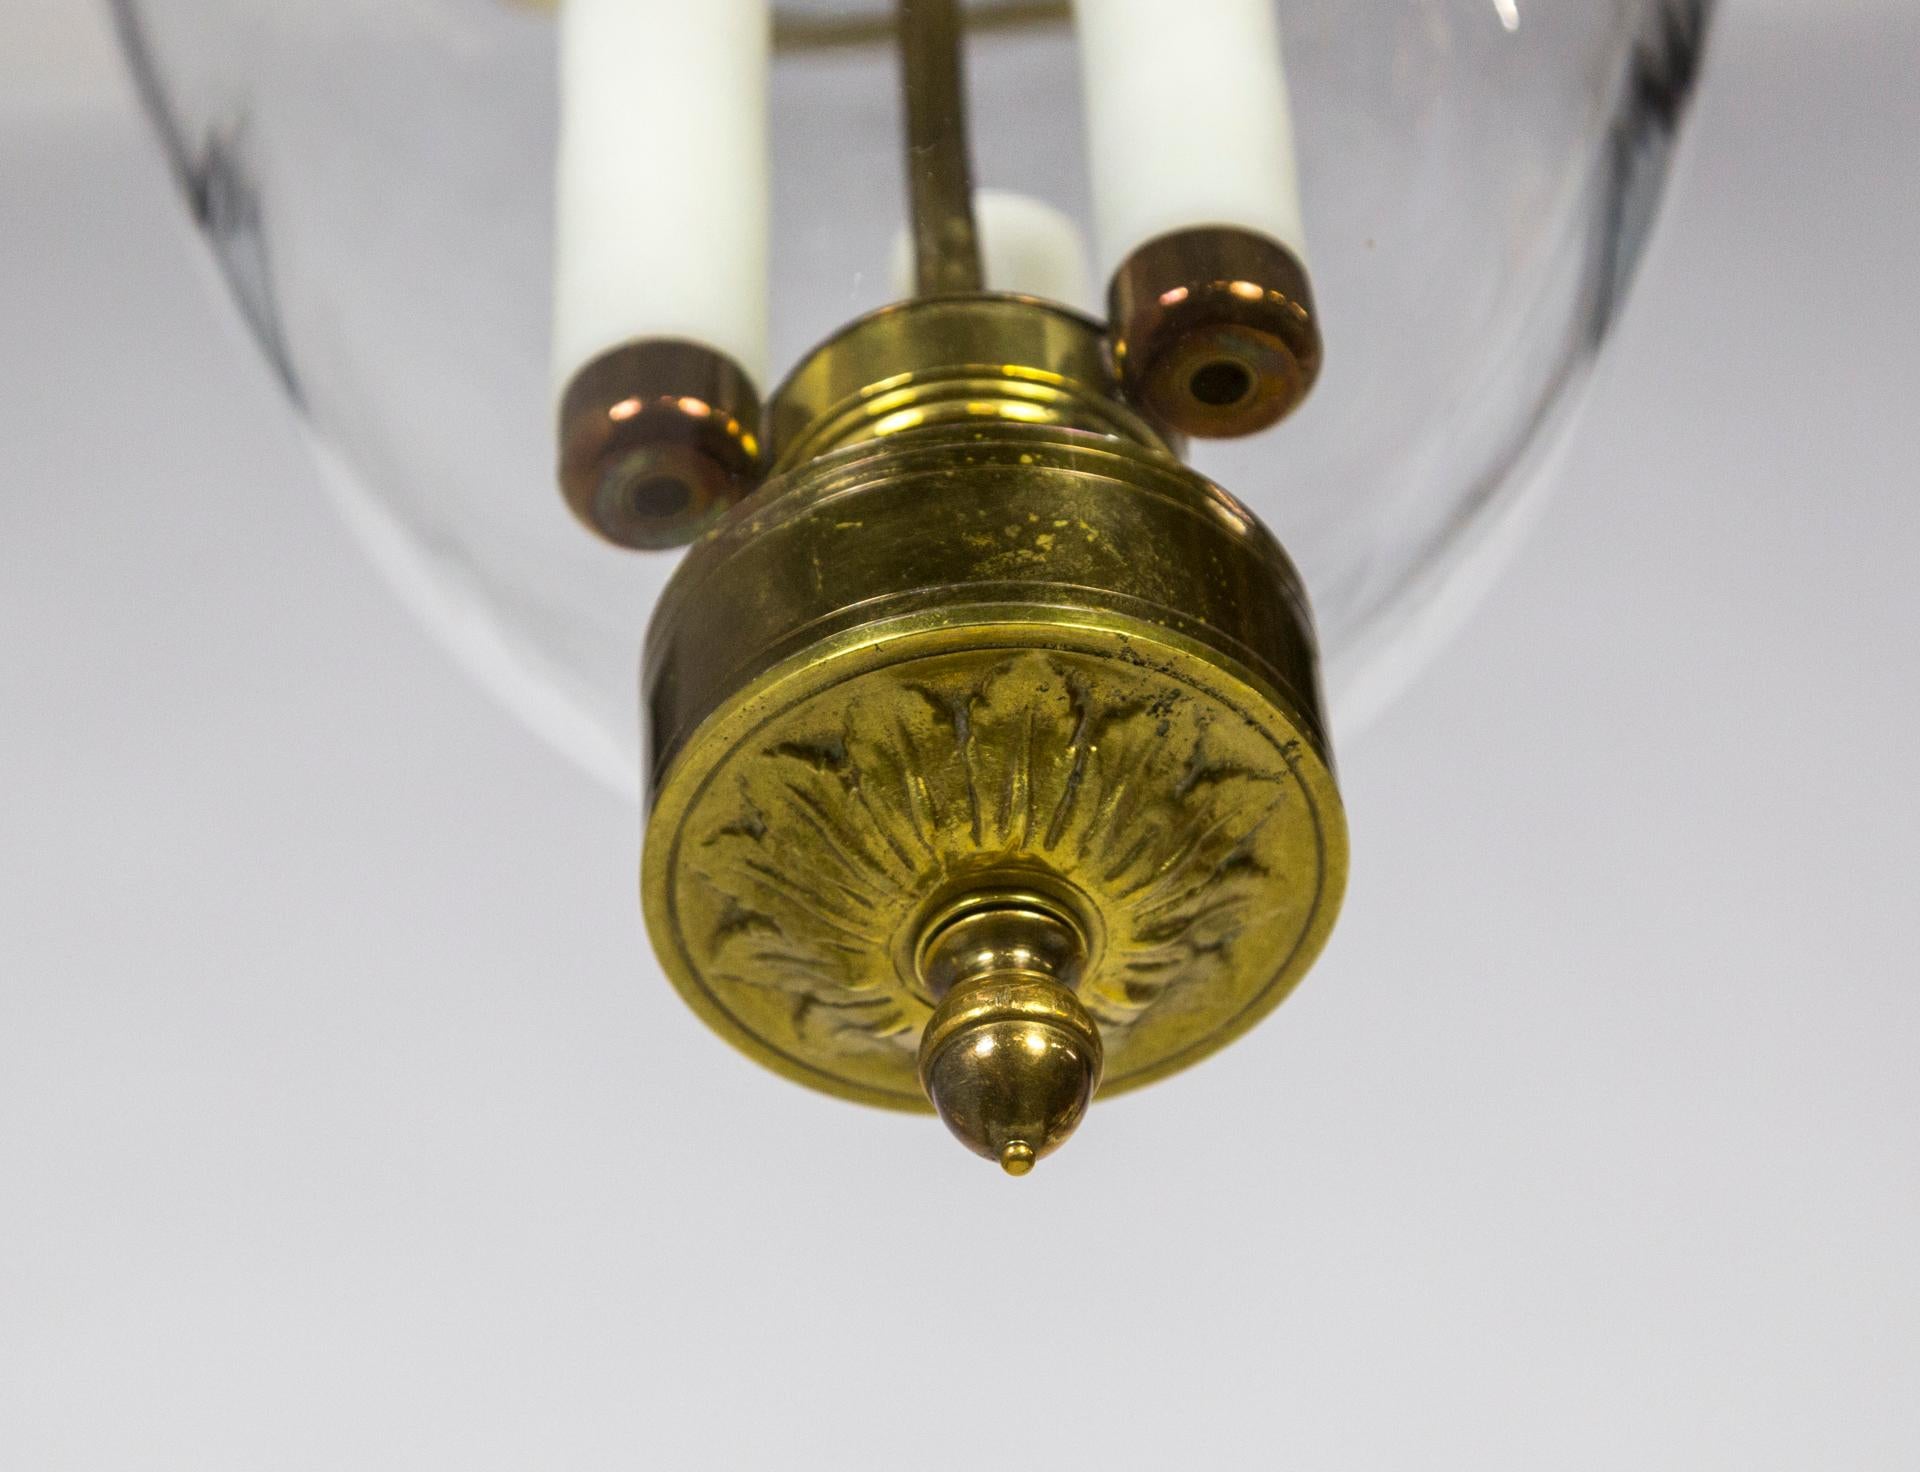 American Belle Epoque Style Brass & Glass Bell Jar Lantern w/ Smoke Bell & Swirling Chain